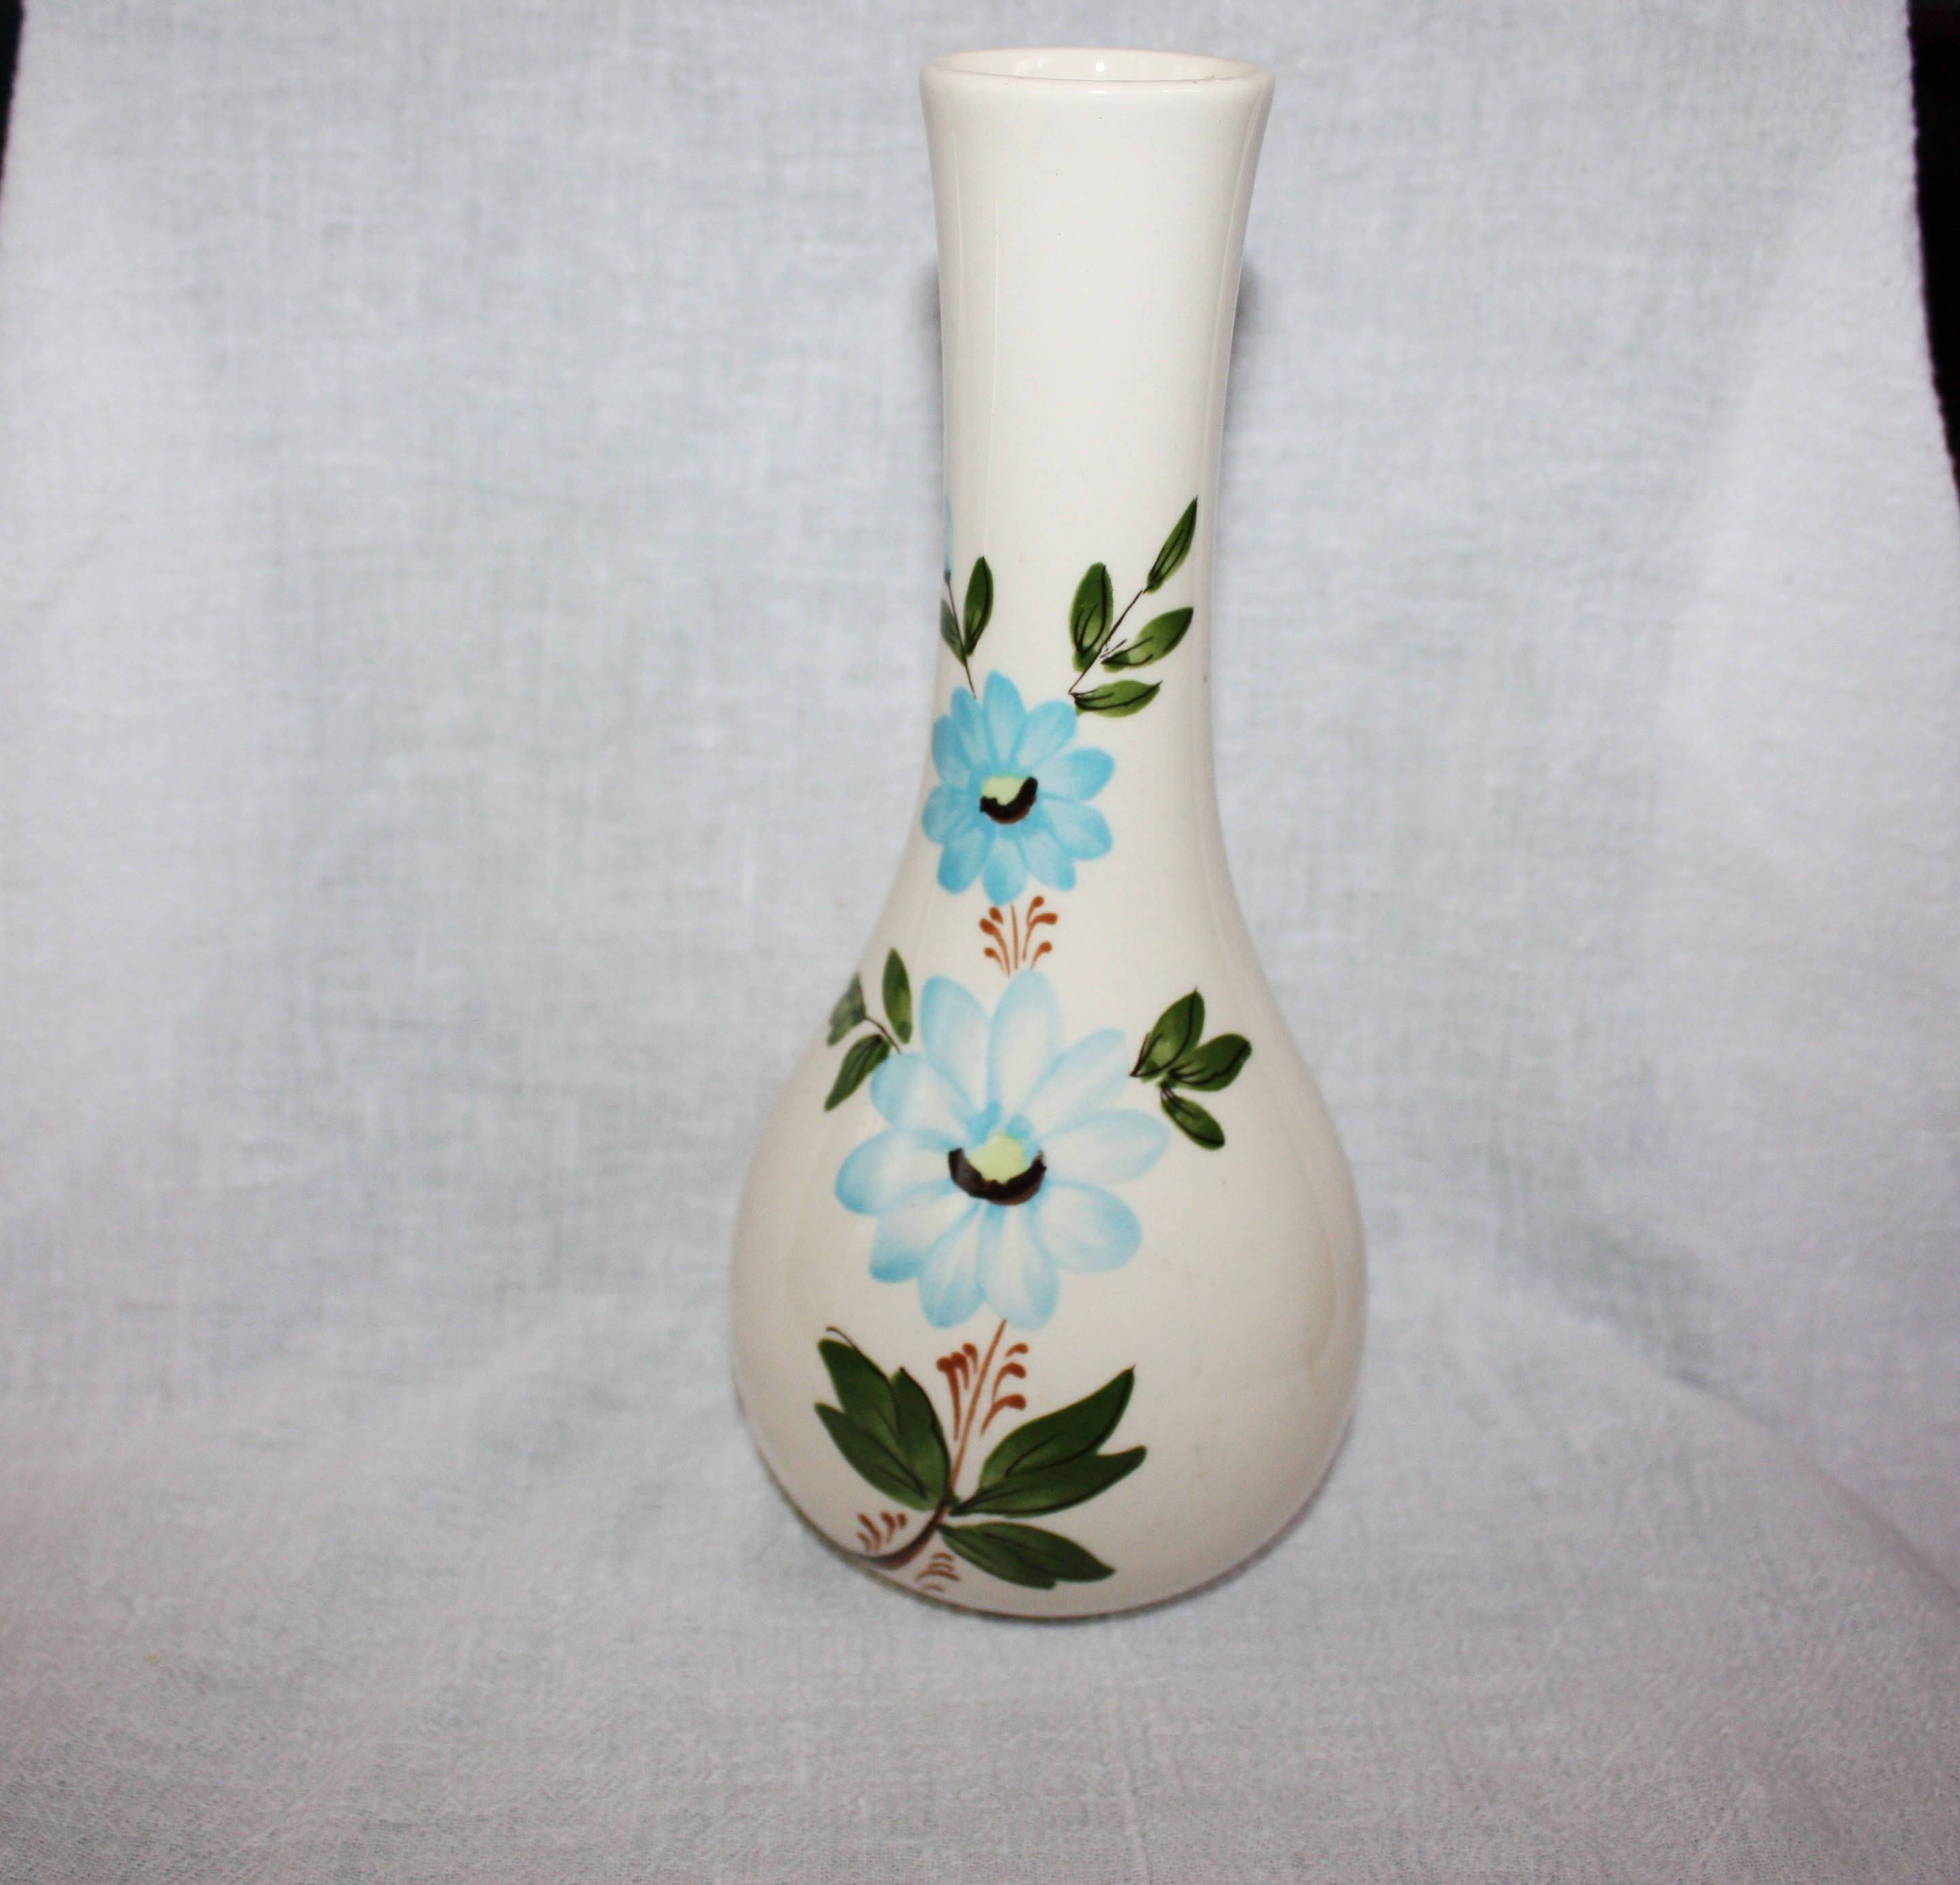 Lenox Crystal Flower Vase Of Vintage 1979 Sado Portugal Vase for Ftda Blue Flowers Etsy within Image 0